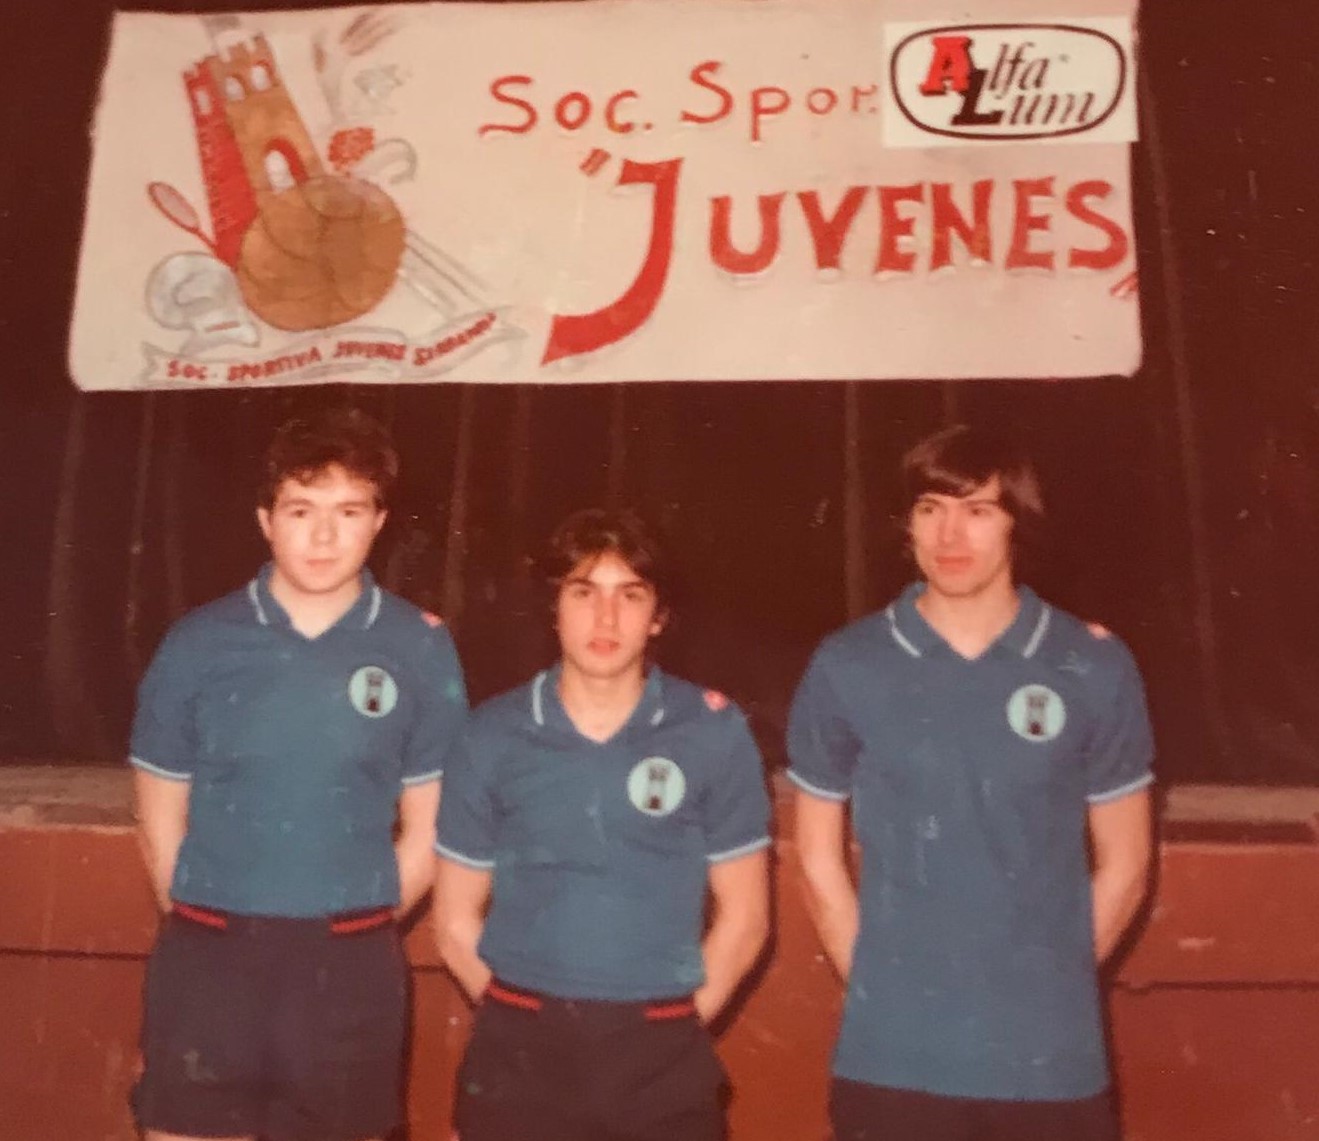 Foto 1983 la prima squadra Juvenes campionato promozione da sx Claudio Stefanelli Fabio Giorgini e Paolo Giardi